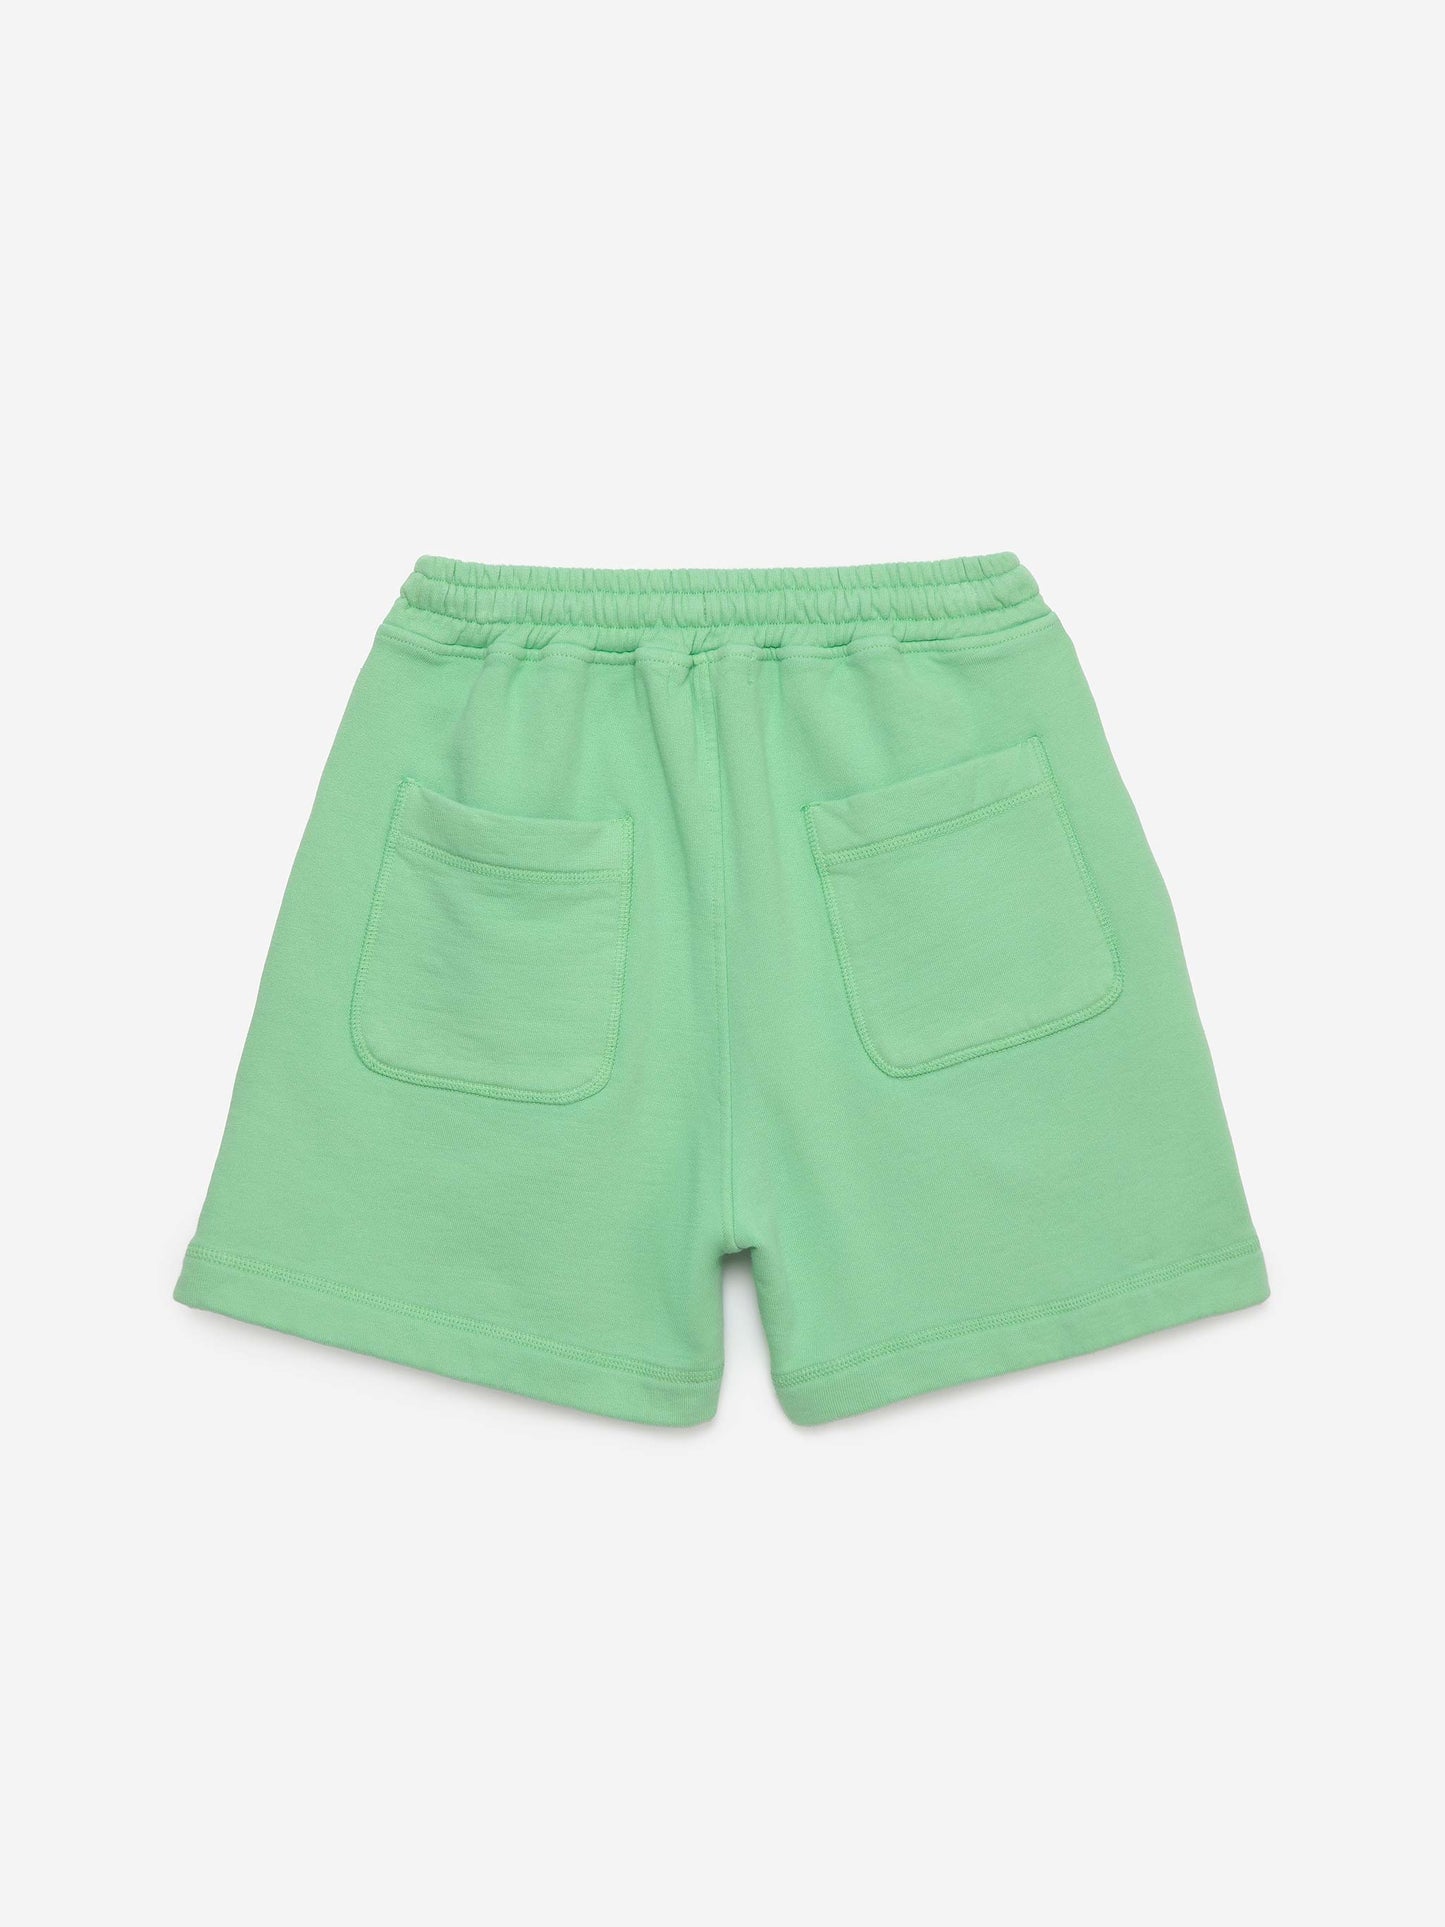 Shorts nº04 Nile Green